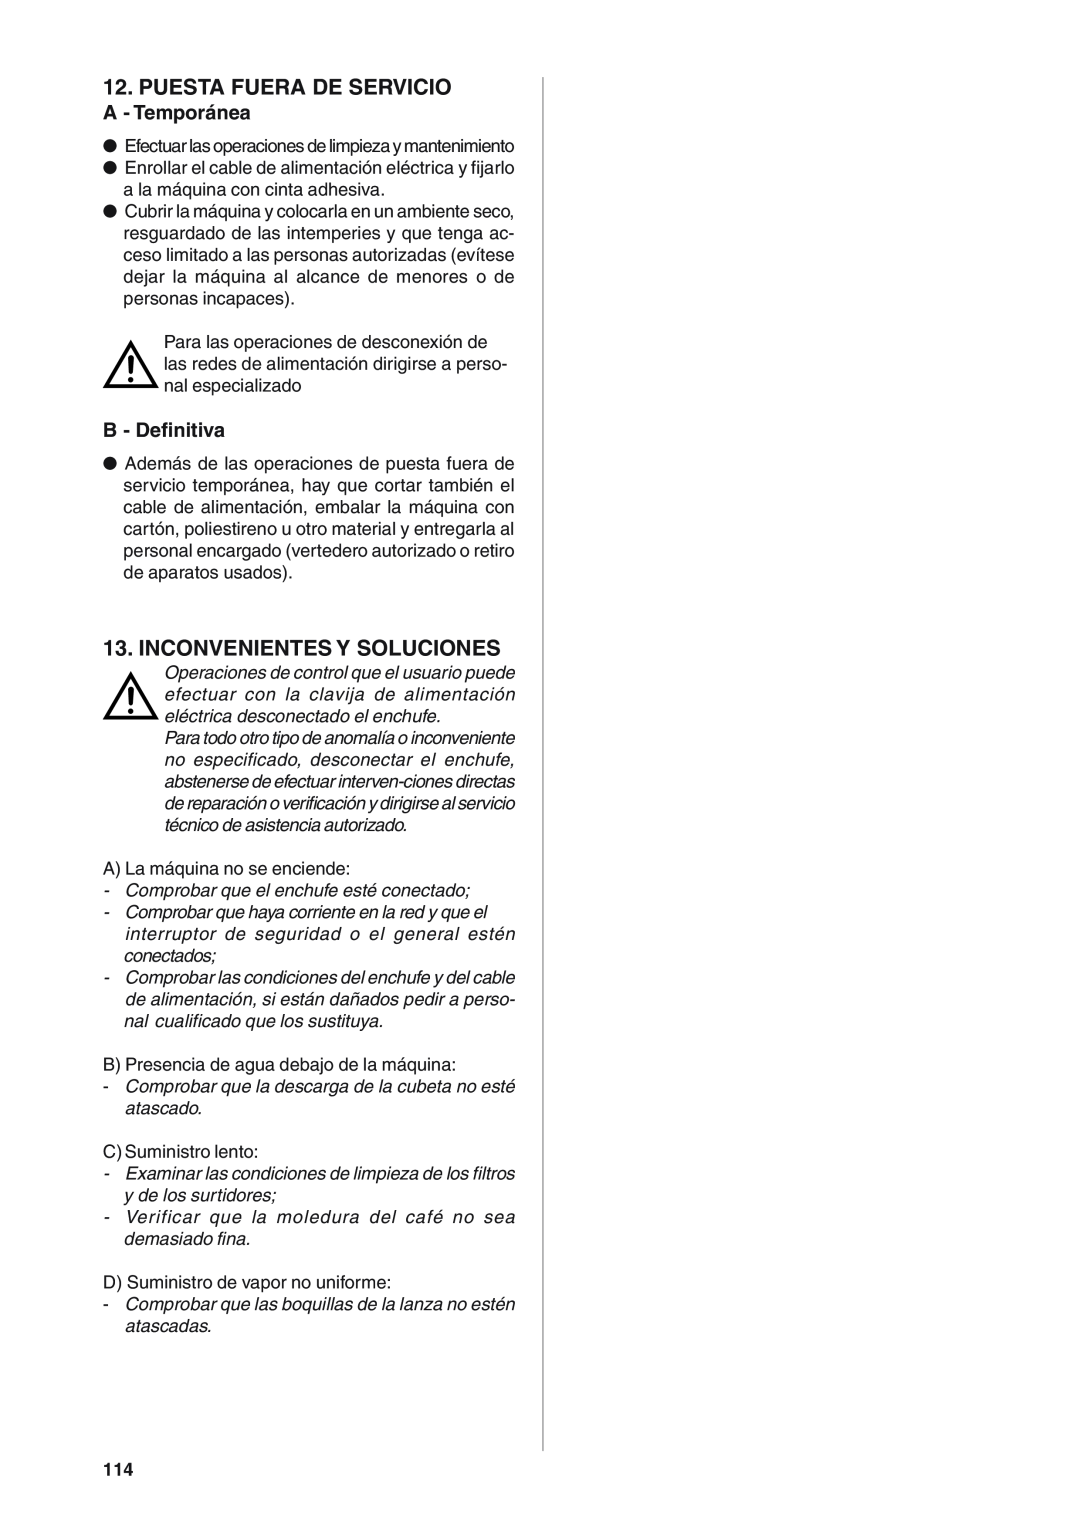 Rancilio S20 manual Puesta Fuera De Servicio, Inconvenientes Y Soluciones, A - Temporánea, B - Definitiva 